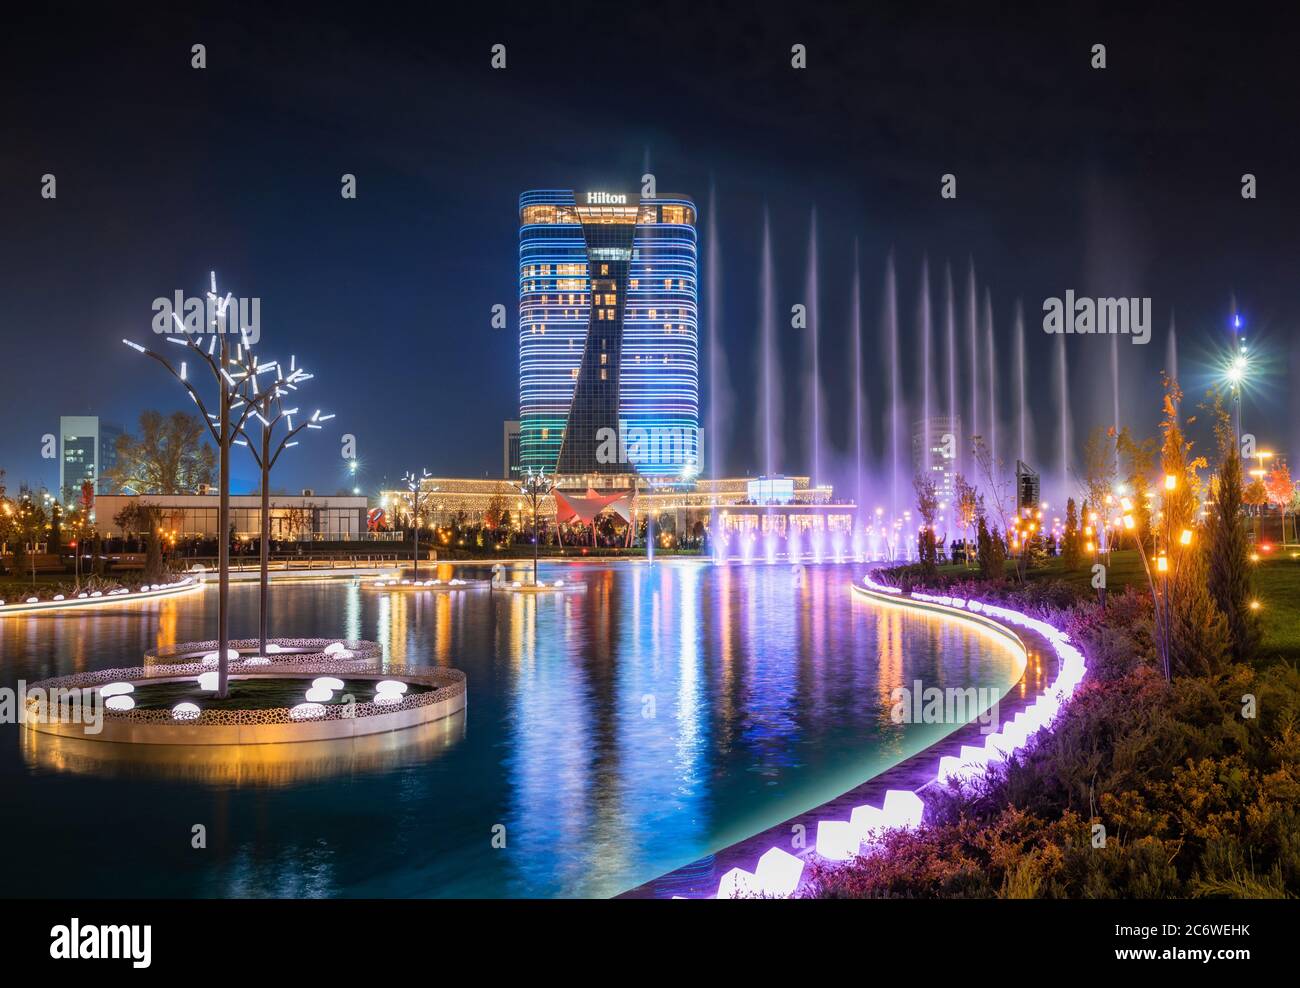 Tachkent, Ouzbékistan - 30 octobre, 2019 : belle fontaine illuminée la nuit danse avec la réflexion dans l'étang à nouveau Parc de la ville de Tachkent Banque D'Images